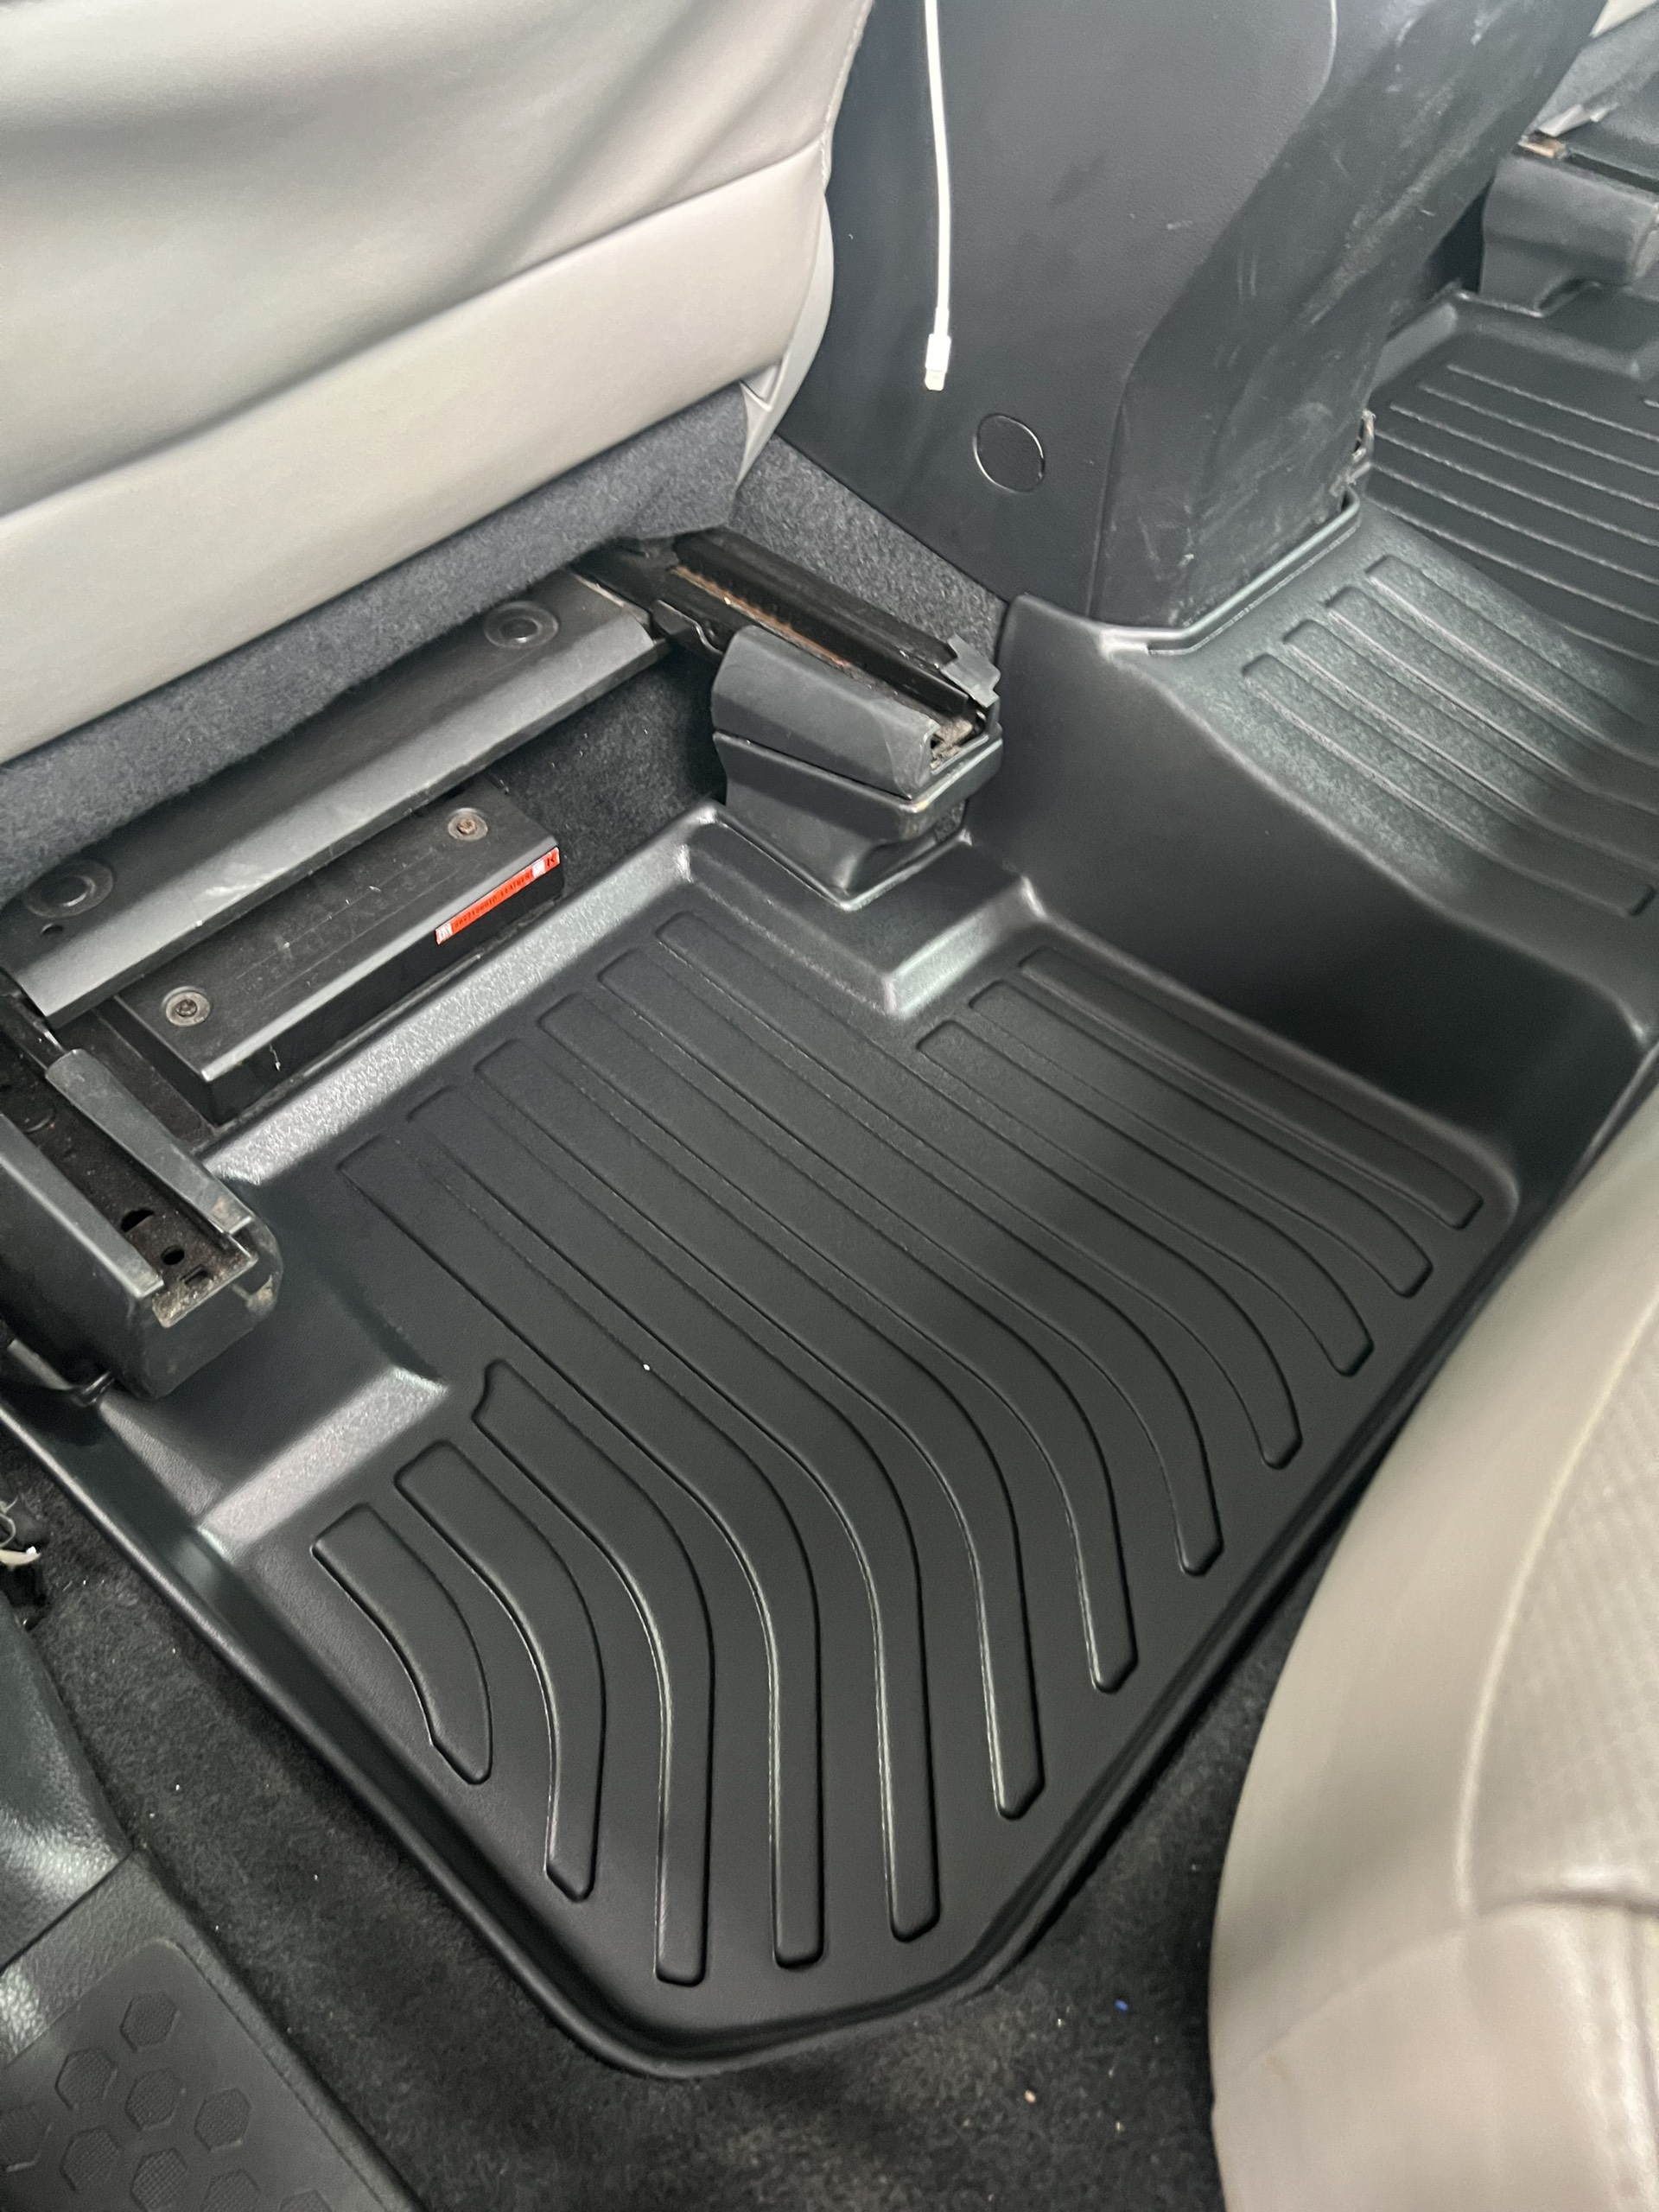 Thảm lót sàn xe Subaru Forester 2013- 2018 Nhãn hiệu Macsim chất liệu nhựa TPV cao cấp màu đen